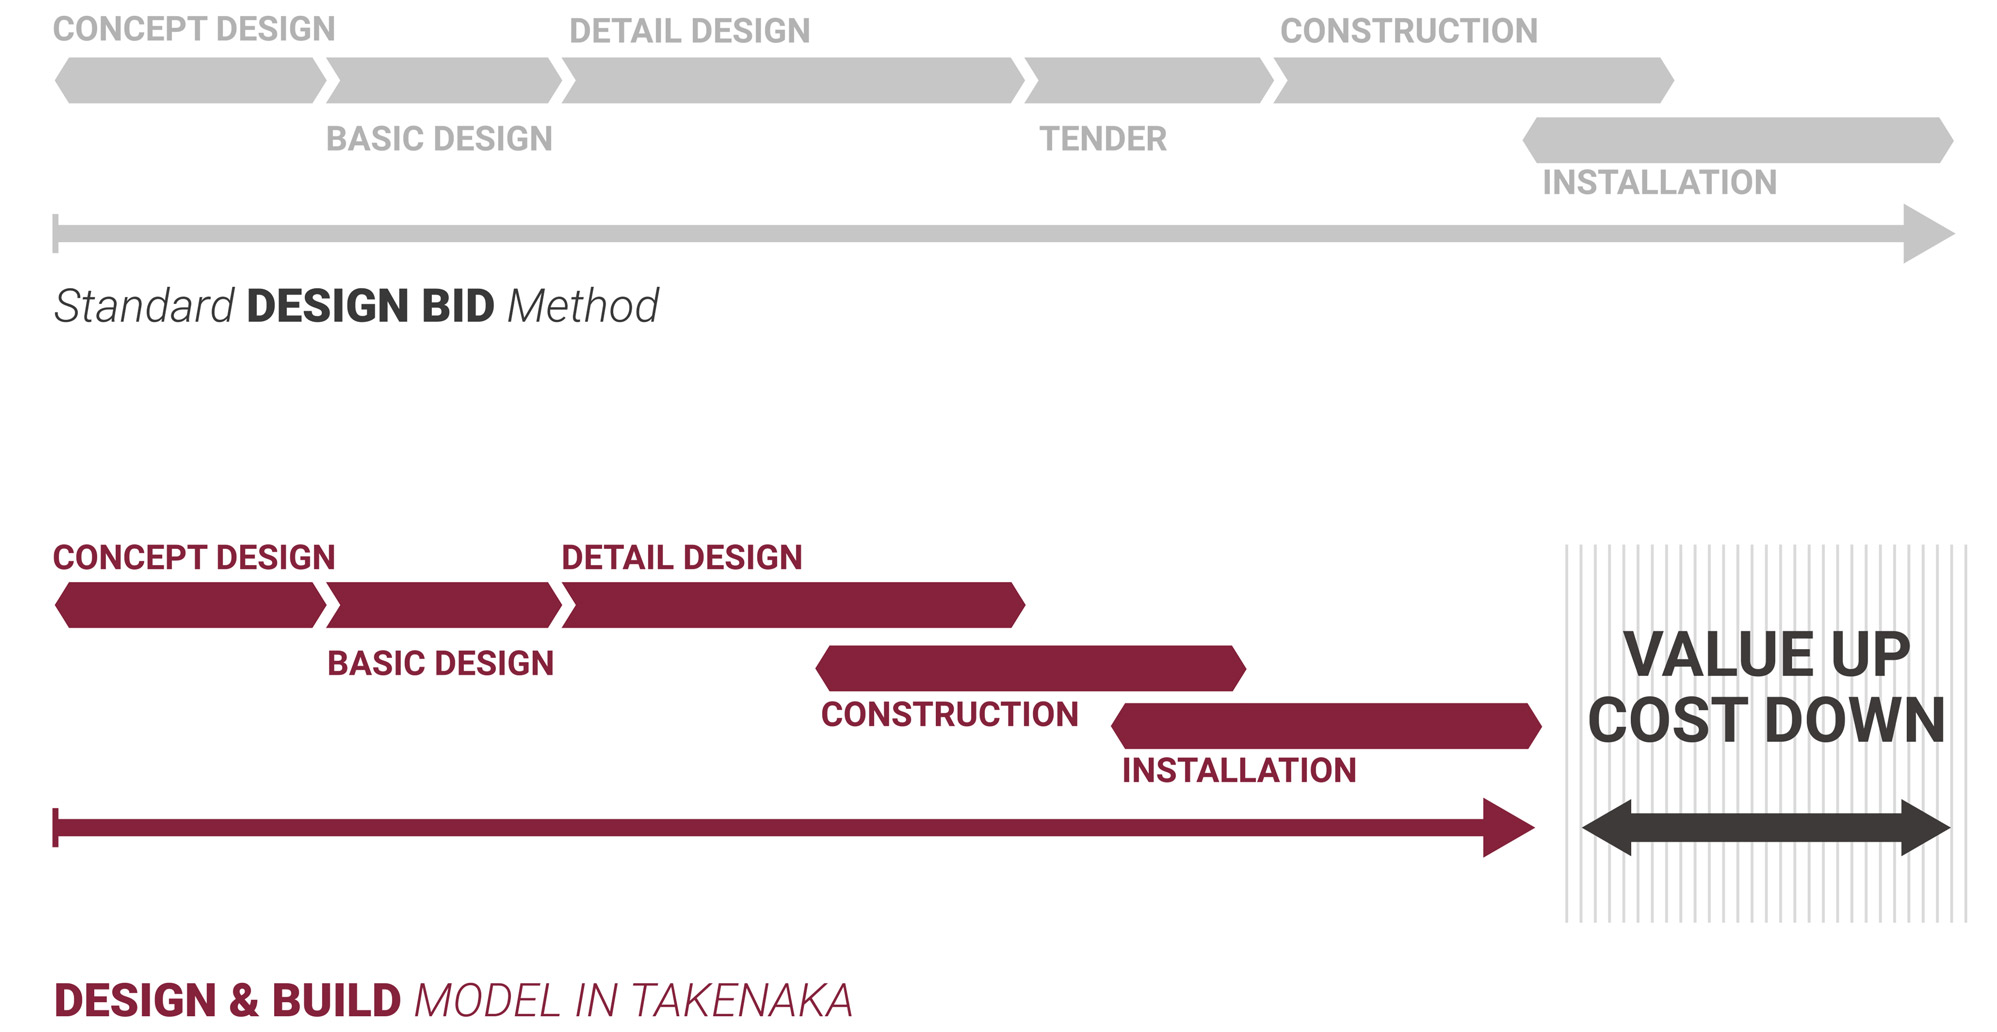 Diagramm, das die Standard-DESIGN BID Methode versus DESIGN & BUILD MODELL zeigt, mit Phasen von Konzept bis Installation und Wert-/Kostenoptimierung.